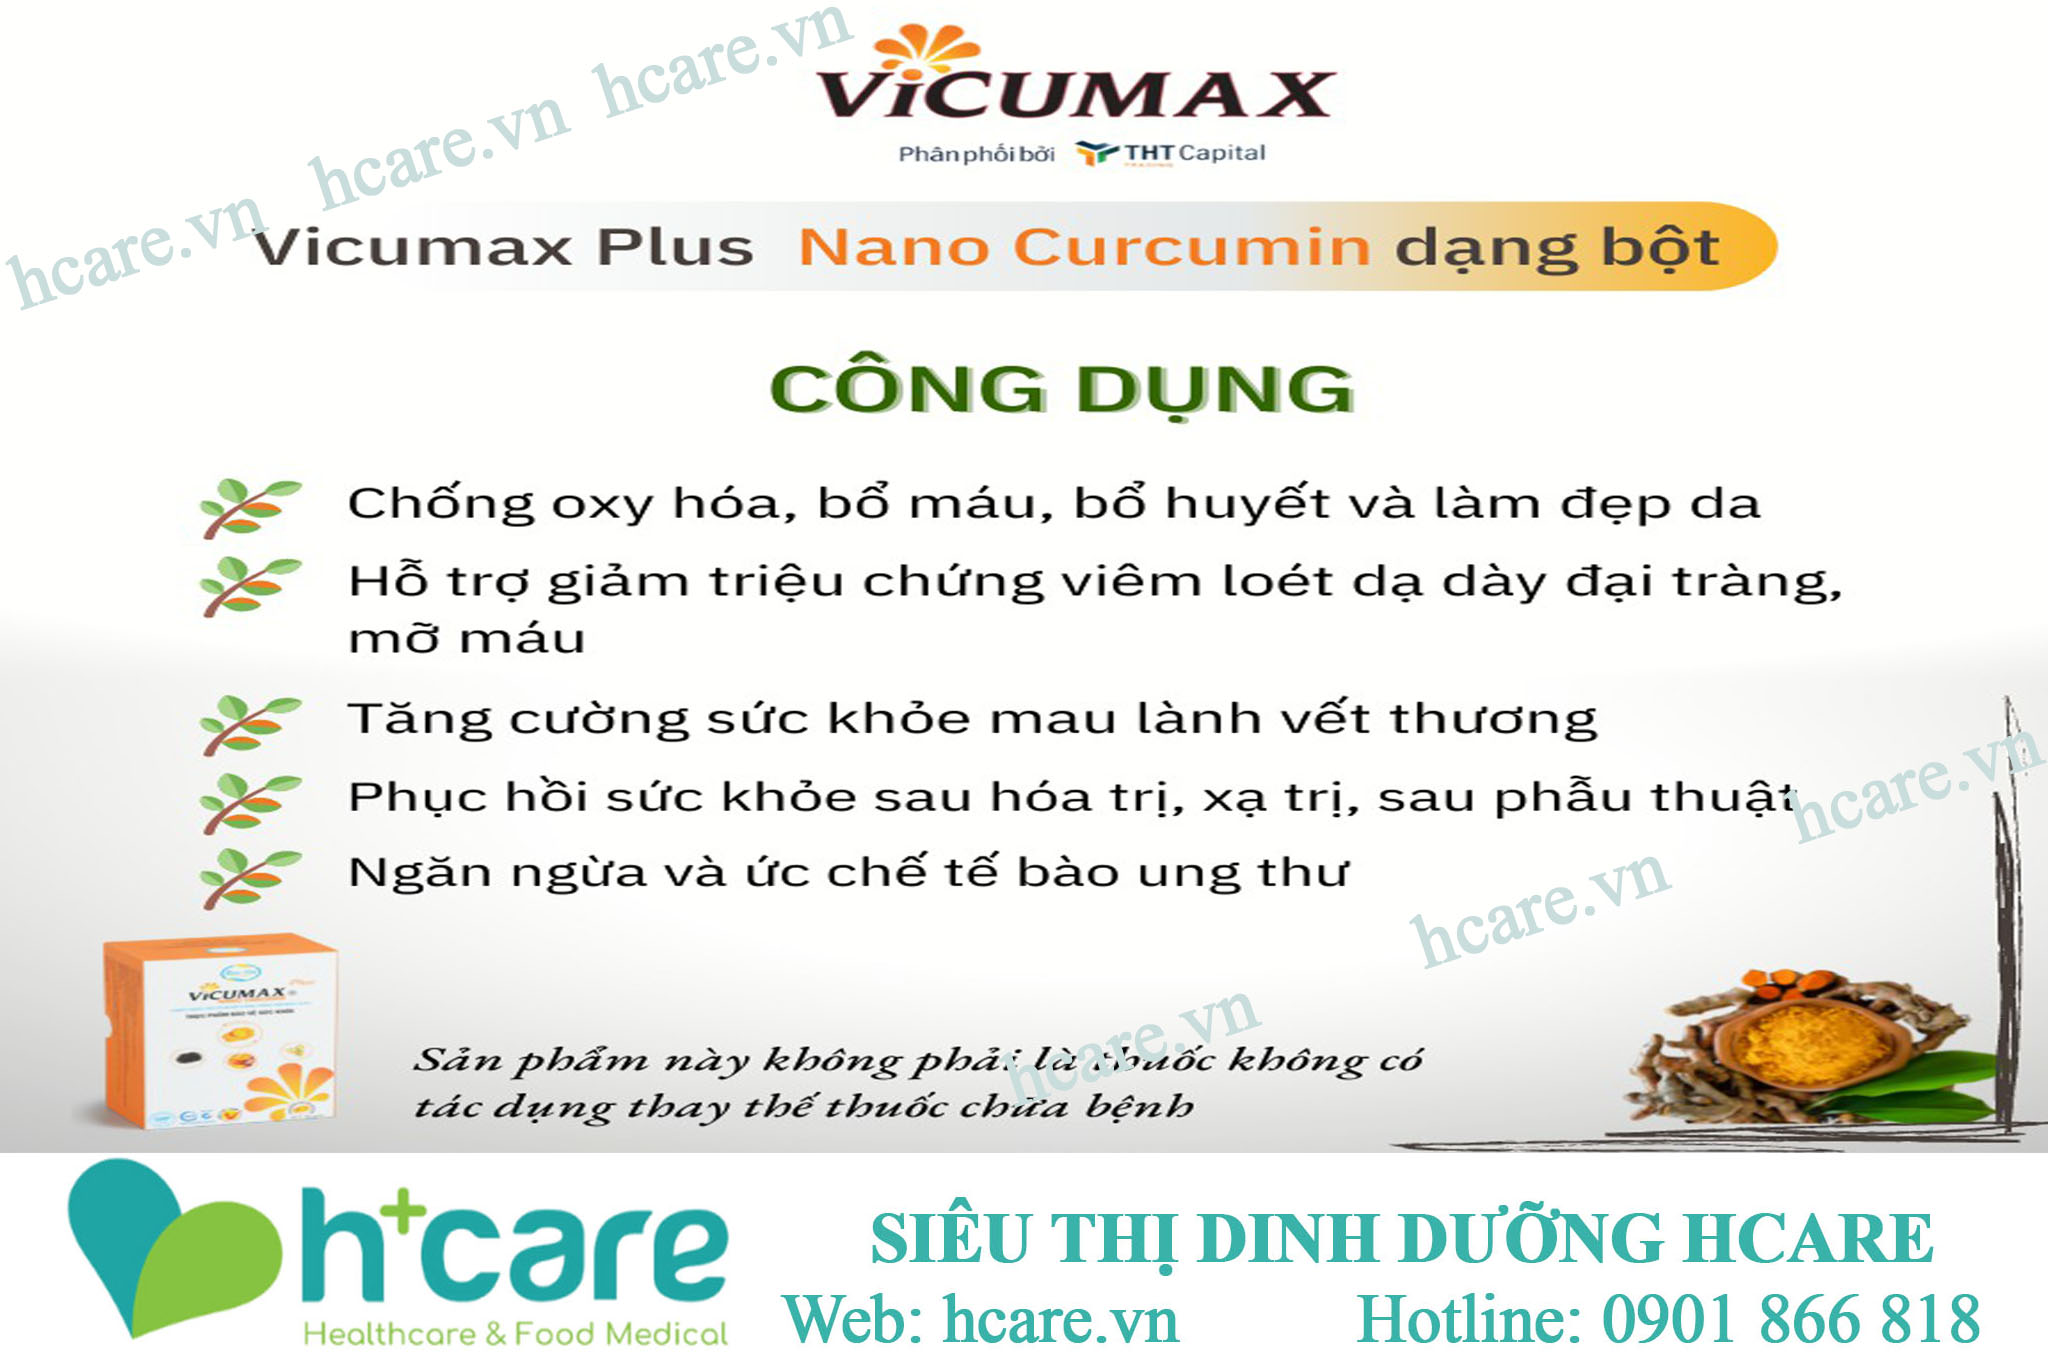 Vicumax Plus nano curcumin 35g - Hỗ trợ giảm triệu chứng viêm loét dạ dày tá tràng 